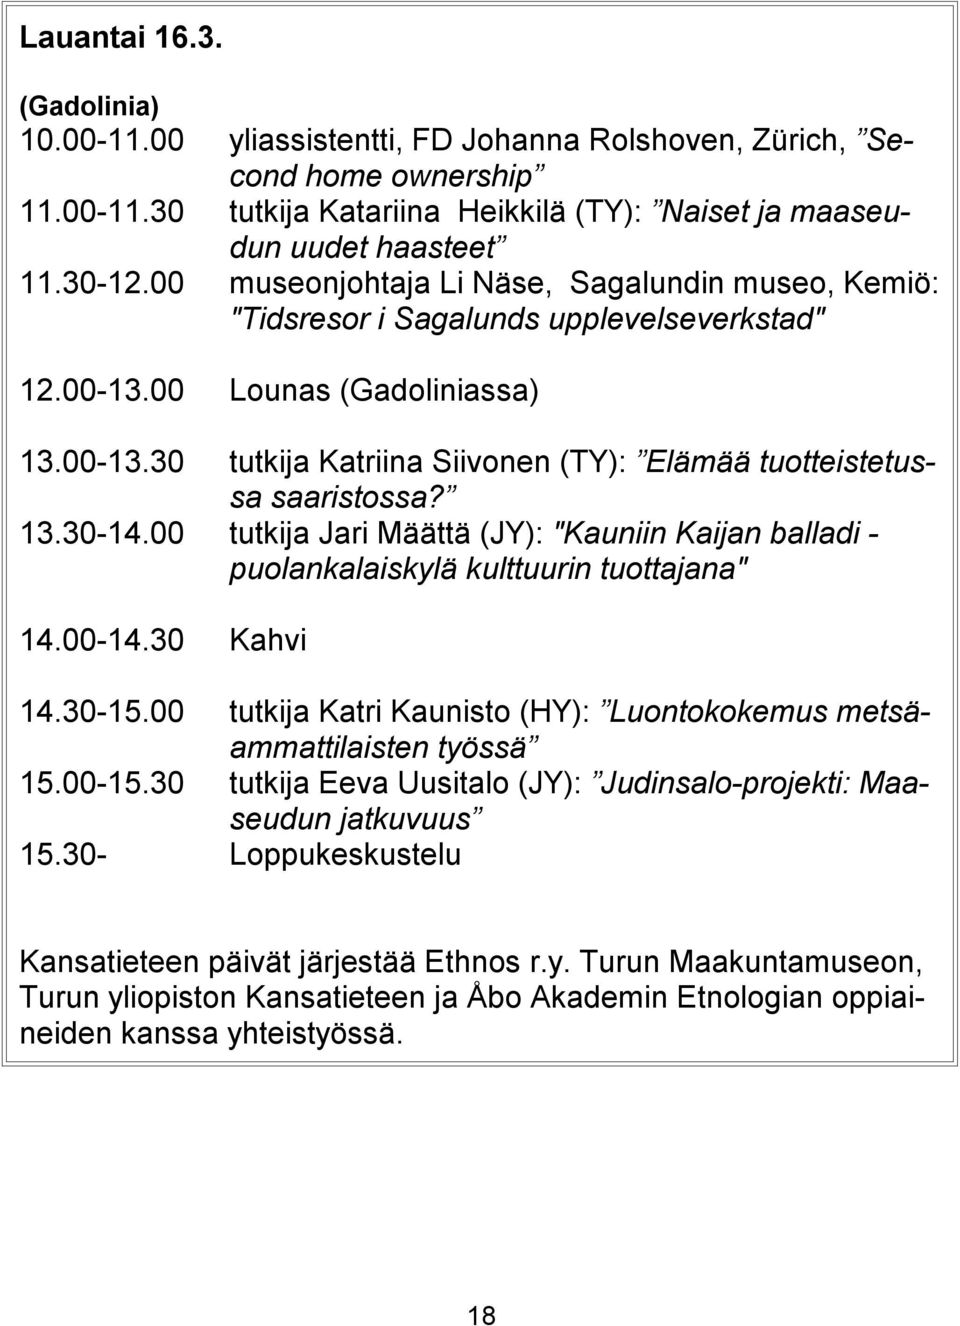 13.30-14.00 tutkija Jari Määttä (JY): "Kauniin Kaijan balladi - puolankalaiskylä kulttuurin tuottajana" 14.00-14.30 Kahvi 14.30-15.